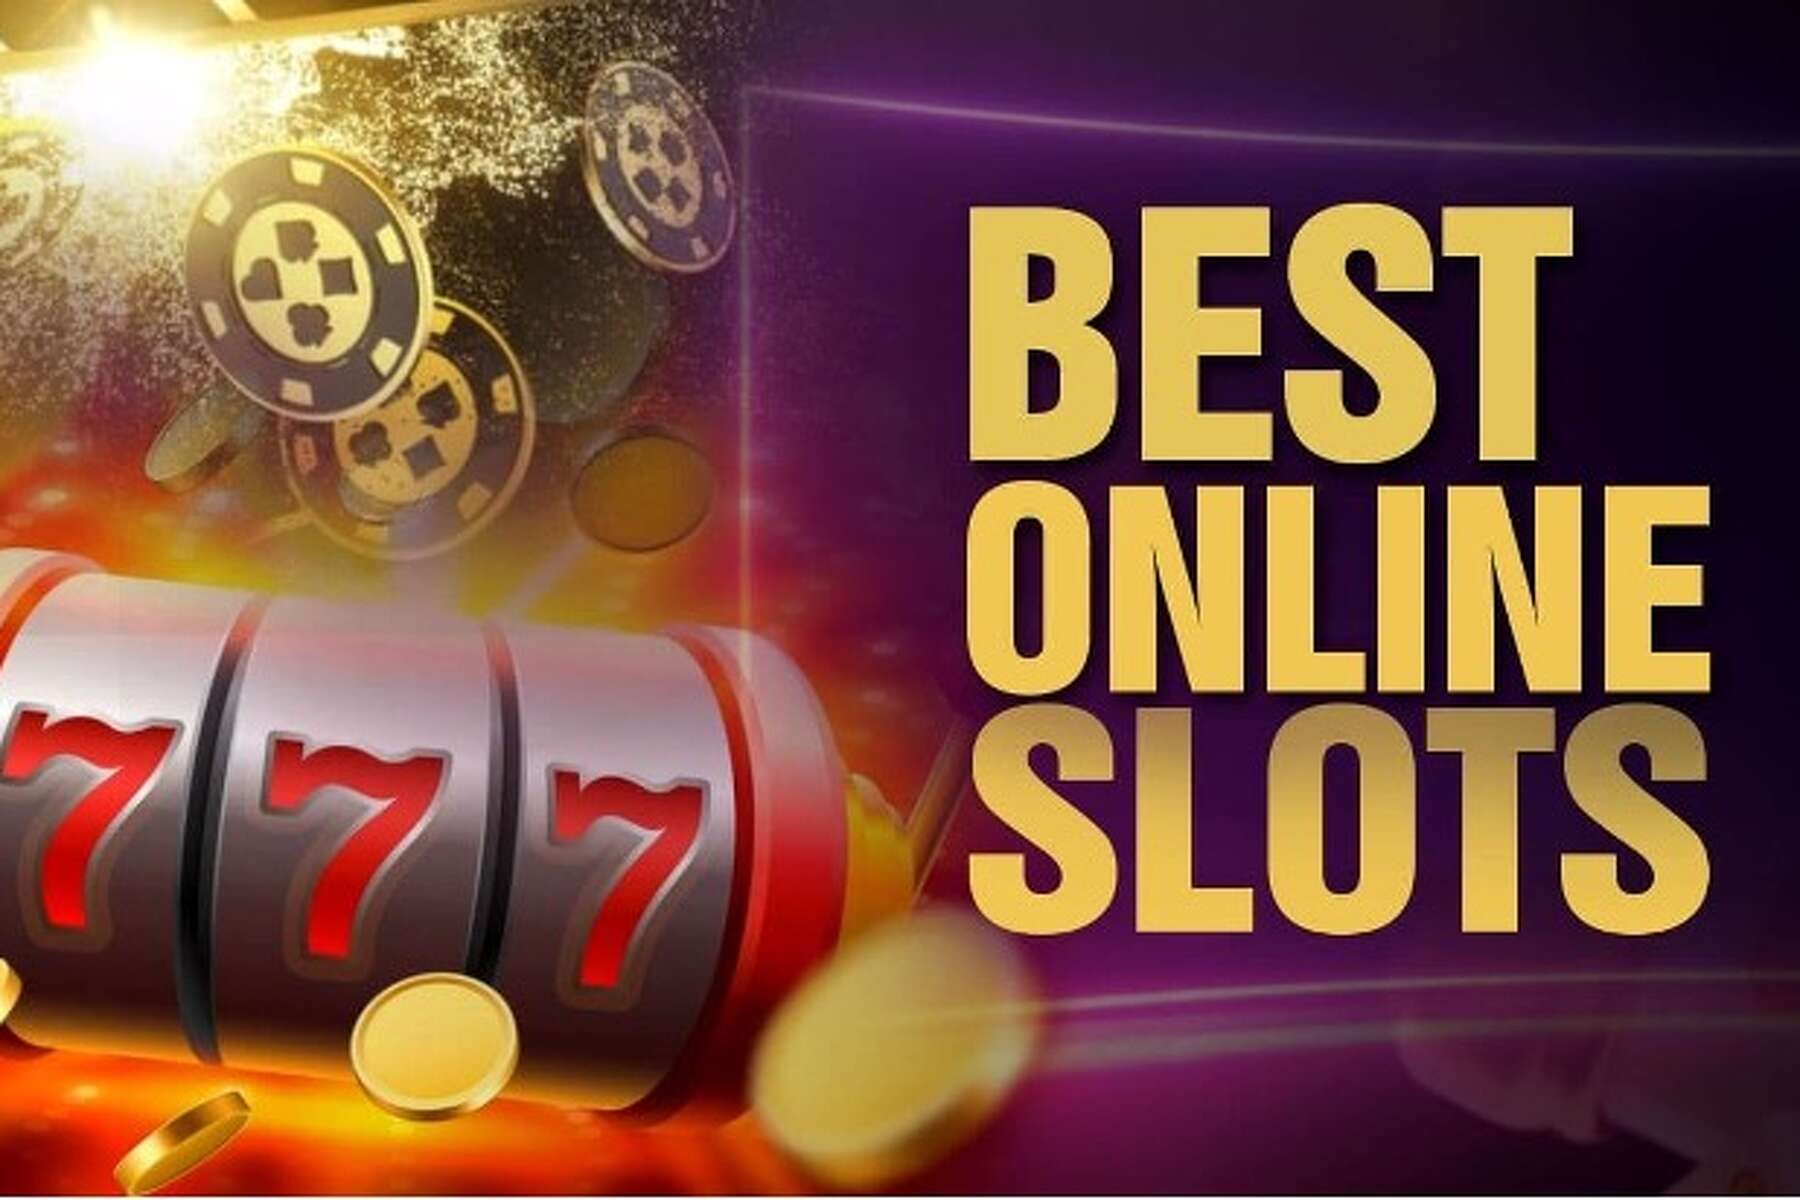 Best online casino games for free мой способ обыграть казино